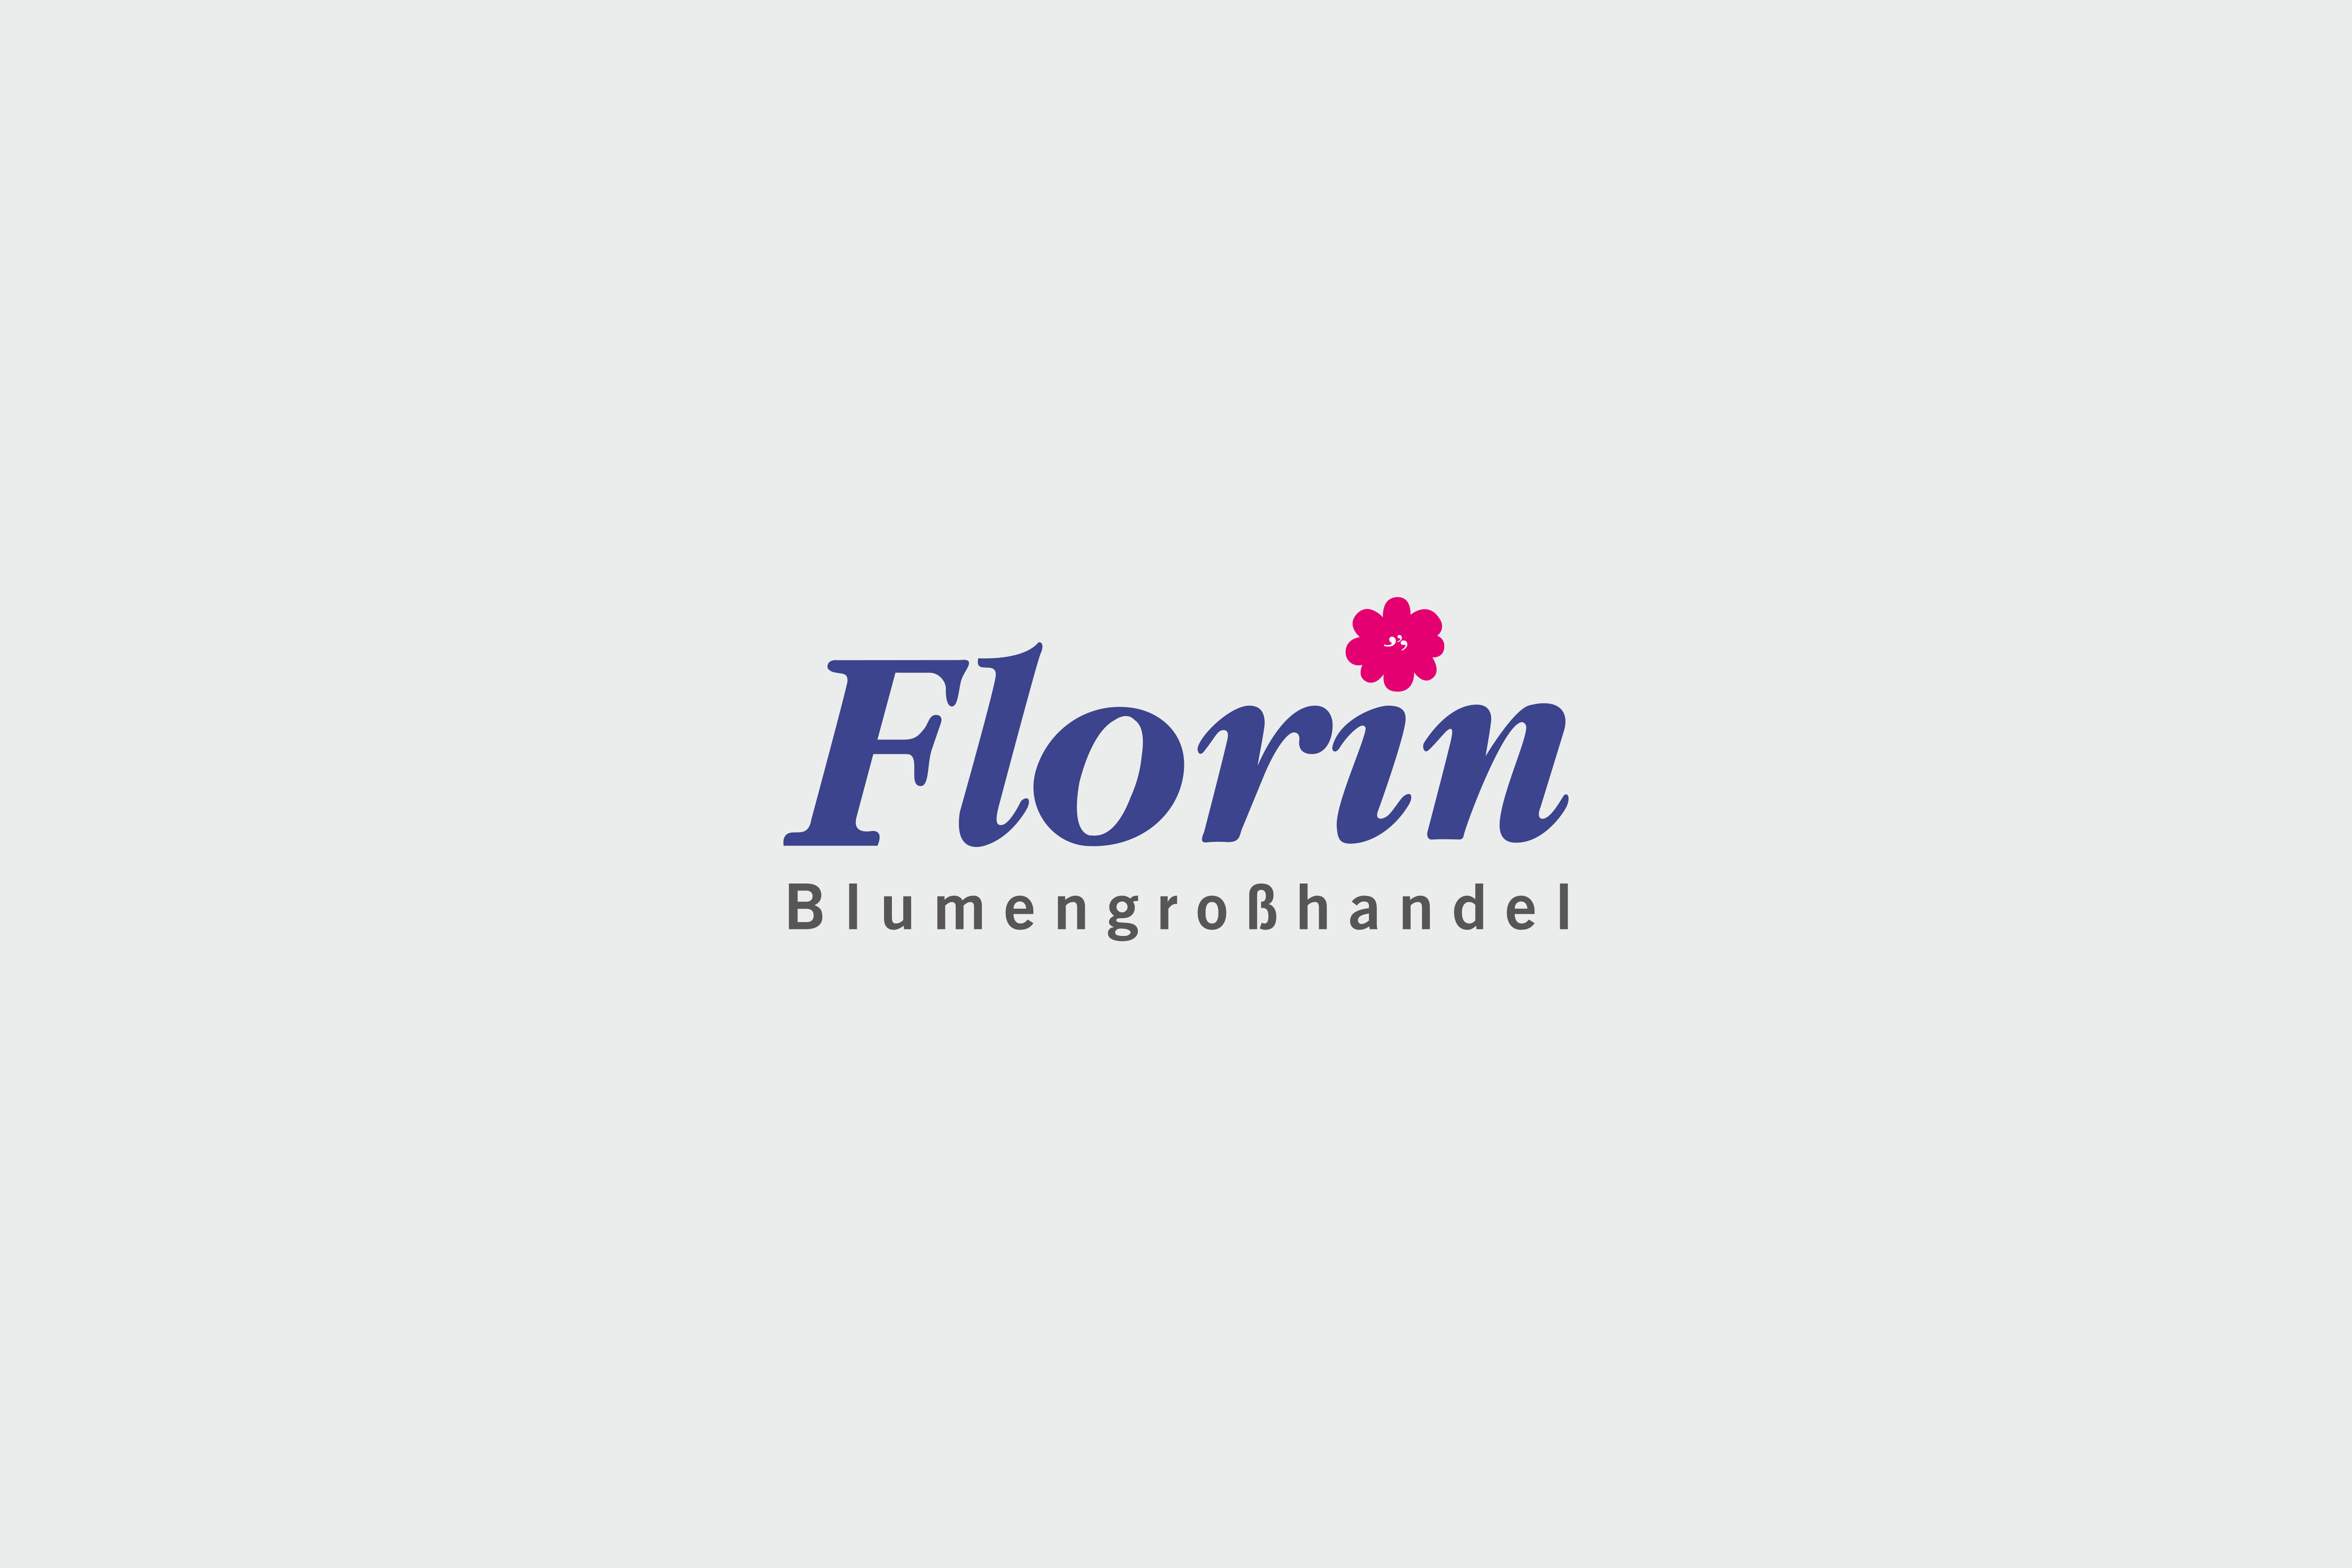 Florin